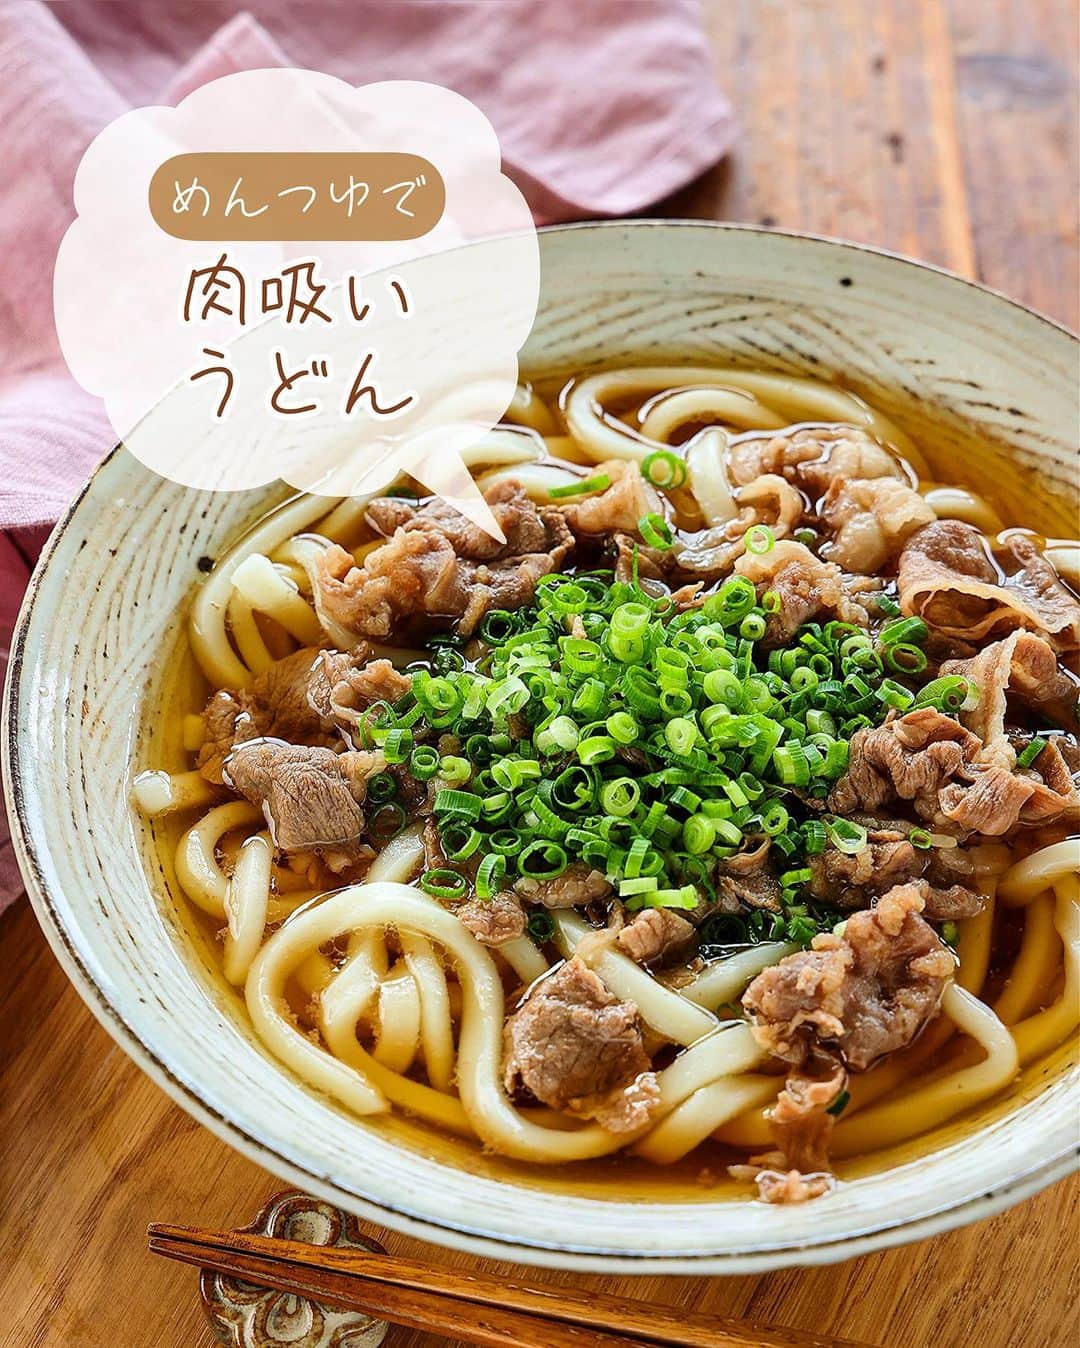 Mizuki【料理ブロガー・簡単レシピ】さんのインスタグラム写真 - (Mizuki【料理ブロガー・簡単レシピ】Instagram)「・連休ごはんにも💕 ⁡ ［#レシピ ］ ーーーーーーーーーーーー あっさりコクうま！ めんつゆde肉吸いうどん ーーーーーーーーーーーー ⁡ ⁡ ⁡ おはようございます☺️ ⁡ 今日ご紹介させていただくのは あっさりコクうま！ \ めんつゆde肉吸いうどん / ⁡ 味付けはめんつゆで失敗なしの 超簡単スピードレシピ💕 少なくシンプルな材料で とってもおいしく仕上がりますよ〜😋 ⁡ あっという間にできるので よかったらお試しくださいね✨ ⁡ ※肉吸いは肉うどんのうどん無しバージョン💡 =これは肉吸い風の味付けにした肉うどん🤭 ⁡ ⁡ 【簡単・時短・節約レシピ更新中🔻】 @mizuki_31cafe ⁡ ⁡ ⁡ ＿＿＿＿＿＿＿＿＿＿＿＿＿＿＿＿＿＿＿ 【2人分】 冷凍うどん...2玉 牛こま切れ肉(又は豚ばら薄切り肉)...150g ⚫︎水...500ml ⚫︎めんつゆ(2倍濃縮)...150ml 塩・万能ねぎ(小口切り)...各適量 ⁡ 1.鍋に⚫︎を入れて中火にかけ、煮立ったら牛肉を加える。ほぐしながら2〜3分煮込み(アクが出たら除く)、塩で味を調える。 2.冷凍うどんをレンジで加熱して器に盛り、1をかけ、ねぎをトッピングする。 ￣￣￣￣￣￣￣￣￣￣￣￣￣￣￣￣￣￣￣ ⁡ ⁡ 《ポイント》 ♦︎塩の量は''少し濃いかな？''というくらいにしておくと◎私は小1/4加えました♩ ♦︎牛肉の代わりに豚肉で作ってもおいしいです♩ ♦︎お肉と一緒に長ねぎ(斜め薄切り)を一緒に煮込んでも♩ ♦︎めんつゆが3倍濃縮の場合は2/3量に減らし、4倍濃縮の場合は1/2量に減らせばOK(ただ全体の水分量が減るのでそこだけ調節してください🙇‍♀️)♩ ⁡ ⁡ ⁡ ⁡ ⁡ ⁡ 𖤣𖥧𖥣𖡡𖥧𖤣✨ 愛用している調理器具や器などは #楽天ROOMに載せてます ‎𐩢𐩺 (ハイライトから飛べます🛍) ⁡ ⁡ ⁡ ⁡ ⁡ ⁡ 🔶全国の書店・ネット書店で発売中🔶 ⁡ ✼••┈┈┈┈┈••✼••┈┈┈┈┈••✼ 今日のごはんこれに決まり！ ‎𓊆#Mizukiのレシピノート 500品𓊇 ✼••┈┈┈┈┈••✼••┈┈┈┈┈••✼ ⁡ ˗ˏˋ おかげさまで23万部突破 ˎˊ˗ 料理レシピ本大賞準大賞を受賞しました🙇‍♀️ ⁡ 6000点の中からレシピを厳選し まさかの【500レシピ掲載】❣️ 肉や魚のメインおかずはもちろん 副菜、丼、麺、スープ、お菓子 ハレの日のレシピ、鍋のレシピまで 全てこの一冊で完結𓌉◯𓇋✨ ⁡ ⁡ ⁡ ✼••┈┈┈••✼••┈┈┈••✼ Mizukiのカンタン手作り   𓊆 #3時のおやつ 𓊇 ✼••┈┈┈••✼••┈┈┈••✼ ⁡ 『3分クッキング』で連載中の 「Mizukiのカンタン手作り」 ‎4年分のおやつが1冊になりました！ ❝オーブンなしで❞ 身近な材料と道具でできる 簡単、手軽なおやつを80品🍪 ⁡ ⁡ ⁡ ⁡ ⁡ #肉吸いうどんm #肉うどん #うどん #うどんレシピ #冷凍うどん #肉吸い #ランチ #節約料理 #簡単料理  #時短料理 #料理 #mizukiレシピ  #アルモンデ #時短レシピ #節約レシピ #簡単レシピ」5月2日 6時36分 - mizuki_31cafe